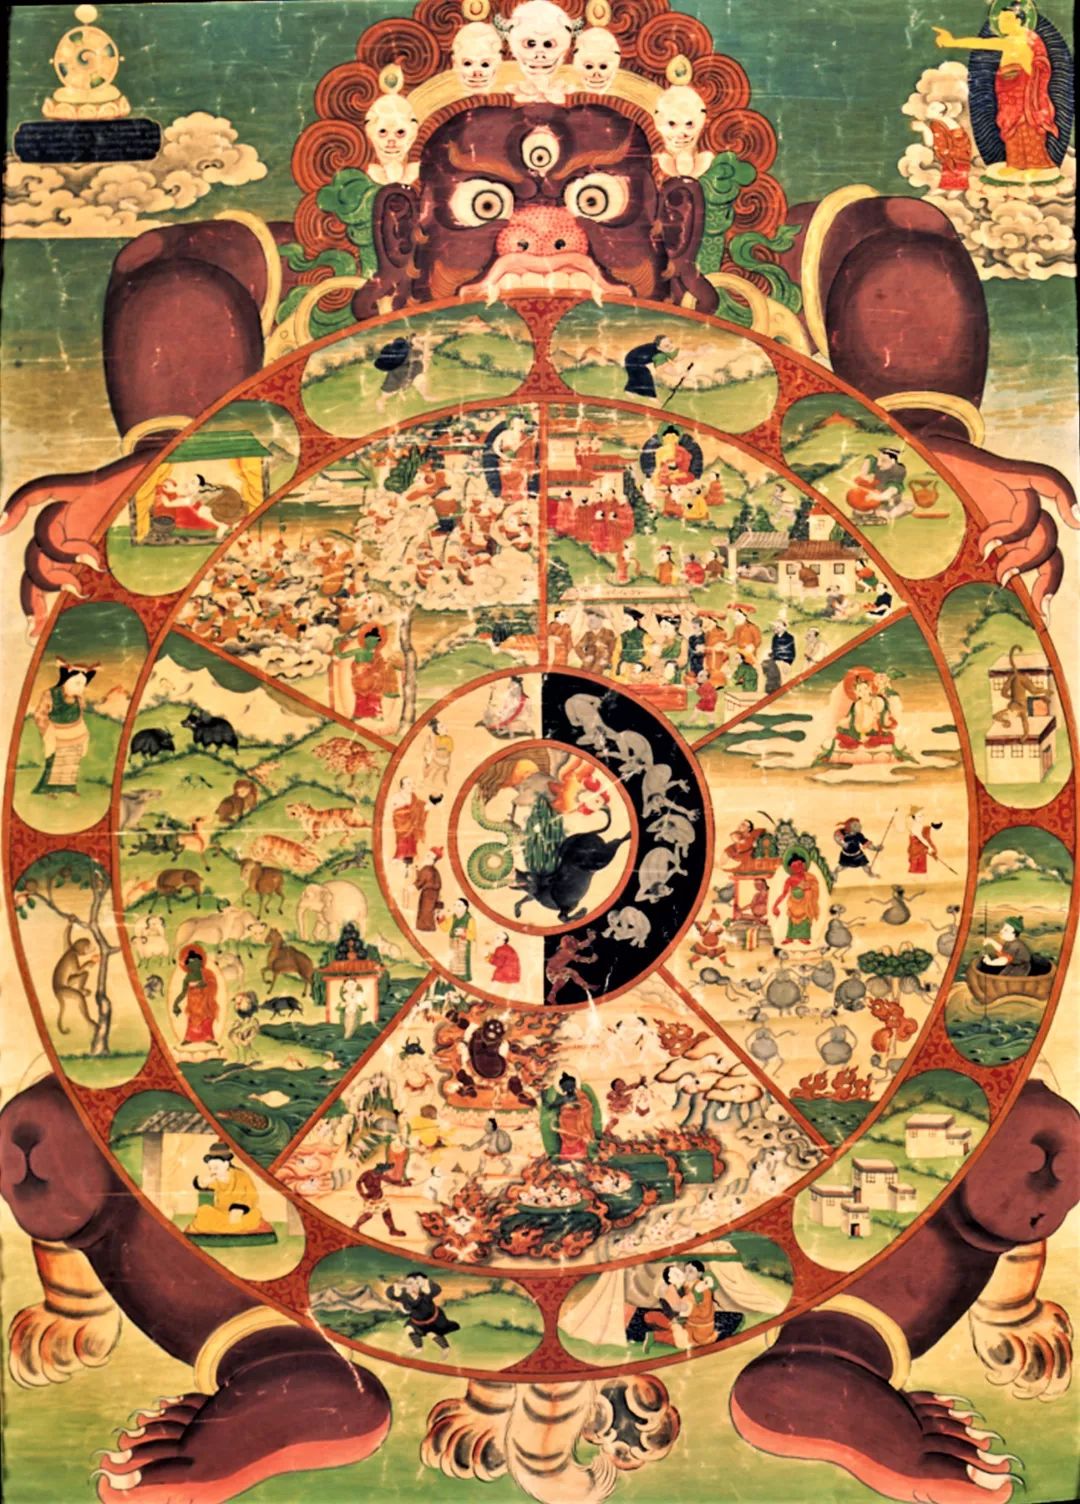 十二因缘是佛教的基本道理,初学佛者要学习佛法,首先就得认识三宝,四